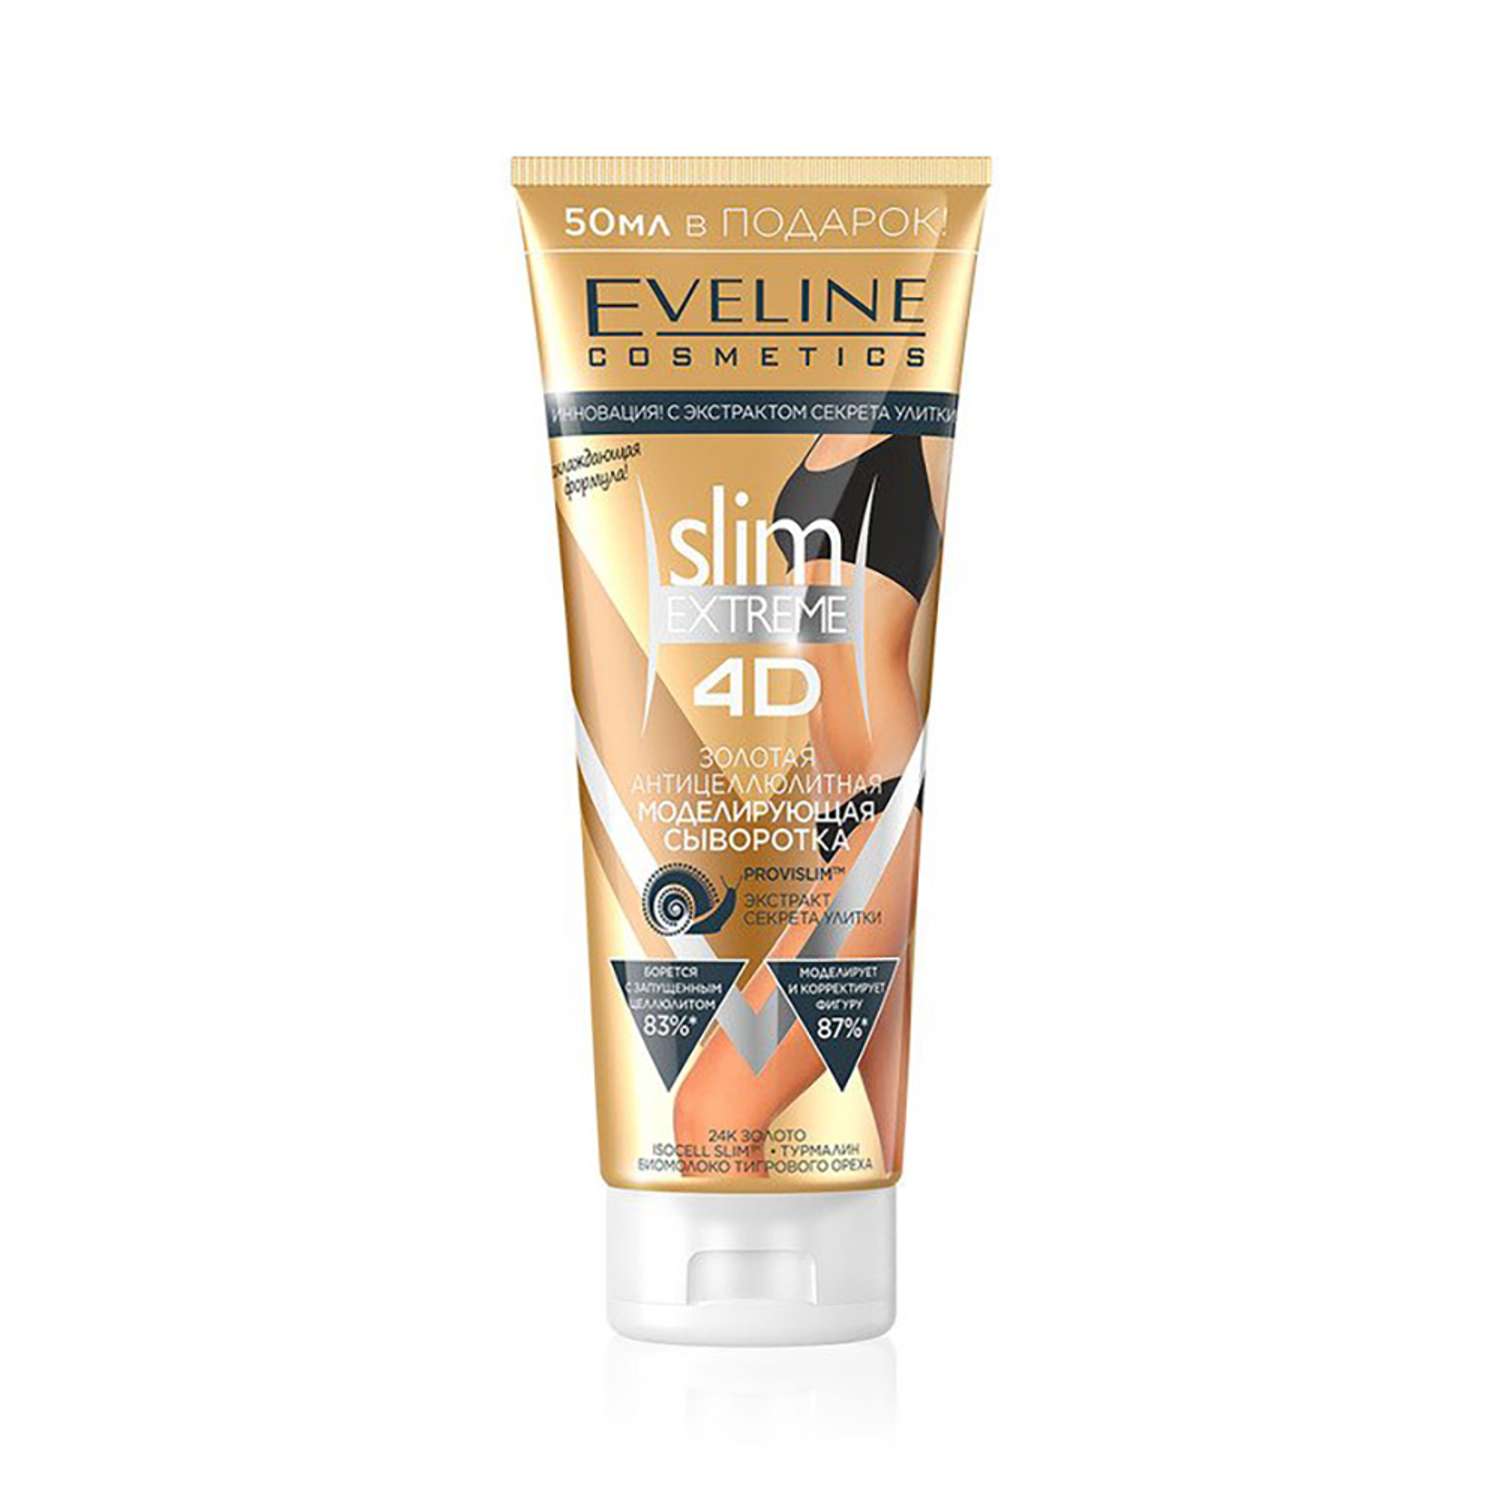 Сыворотка EVELINE Золотая антицеллюлитная моделирующая Slim Extreme 4D 250мл - фото 1